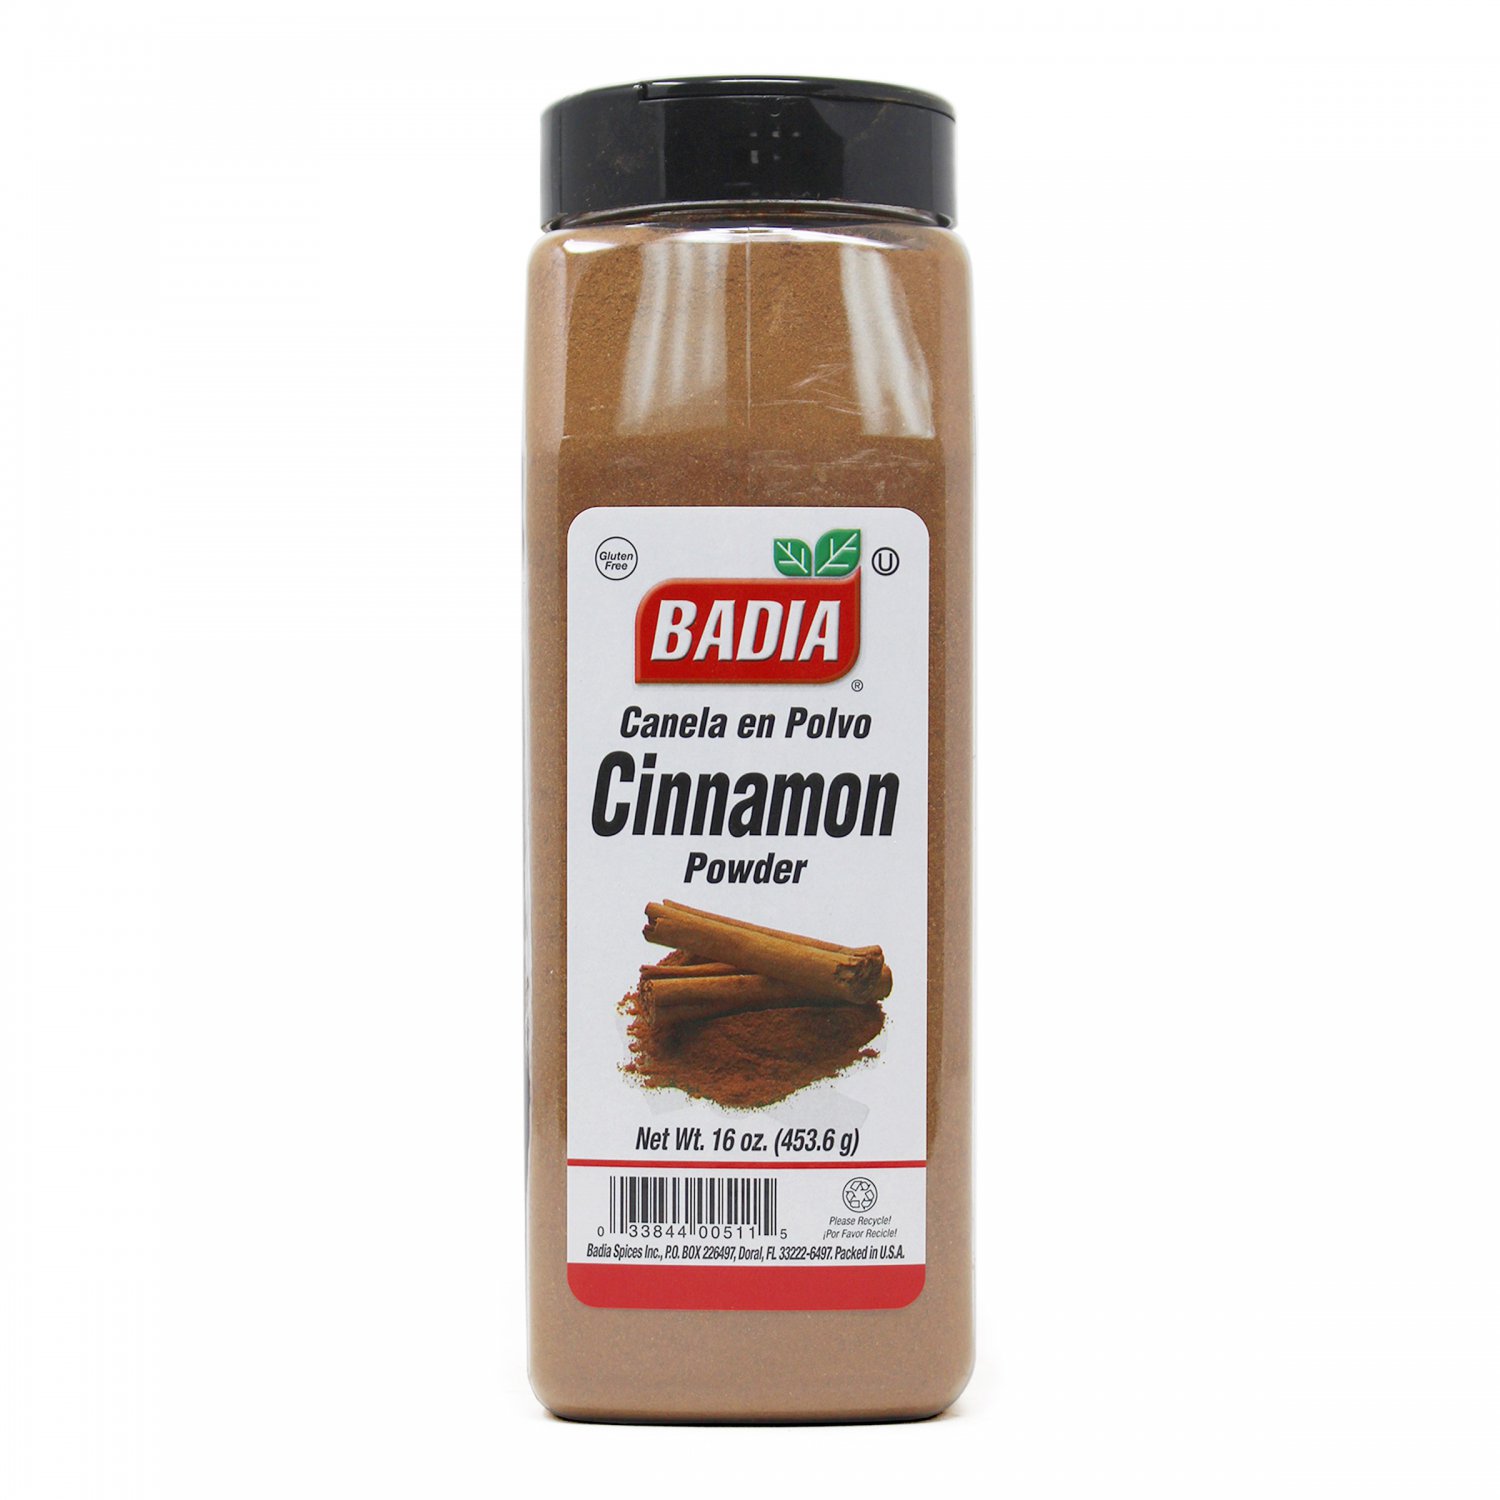 Badia Cinnamon Powder / Canela en Polvo 16 Oz